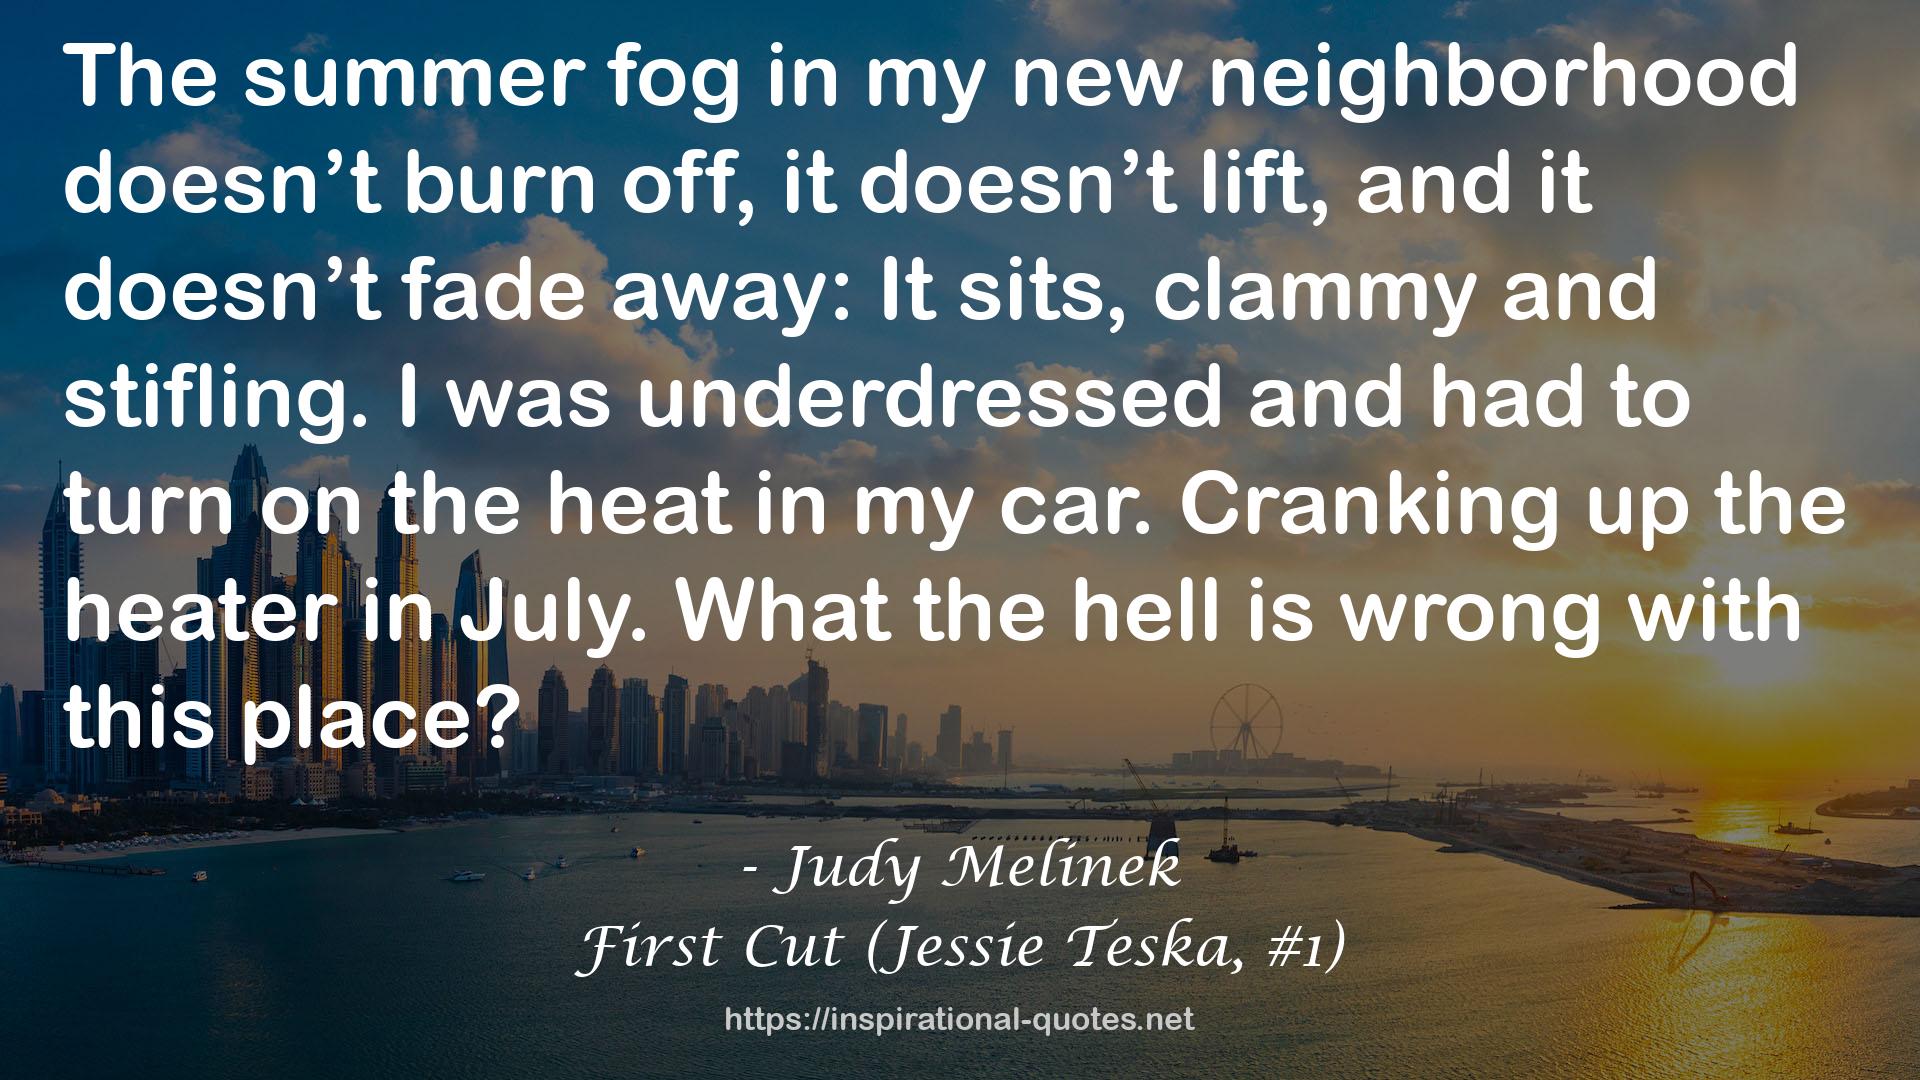 First Cut (Jessie Teska, #1) QUOTES